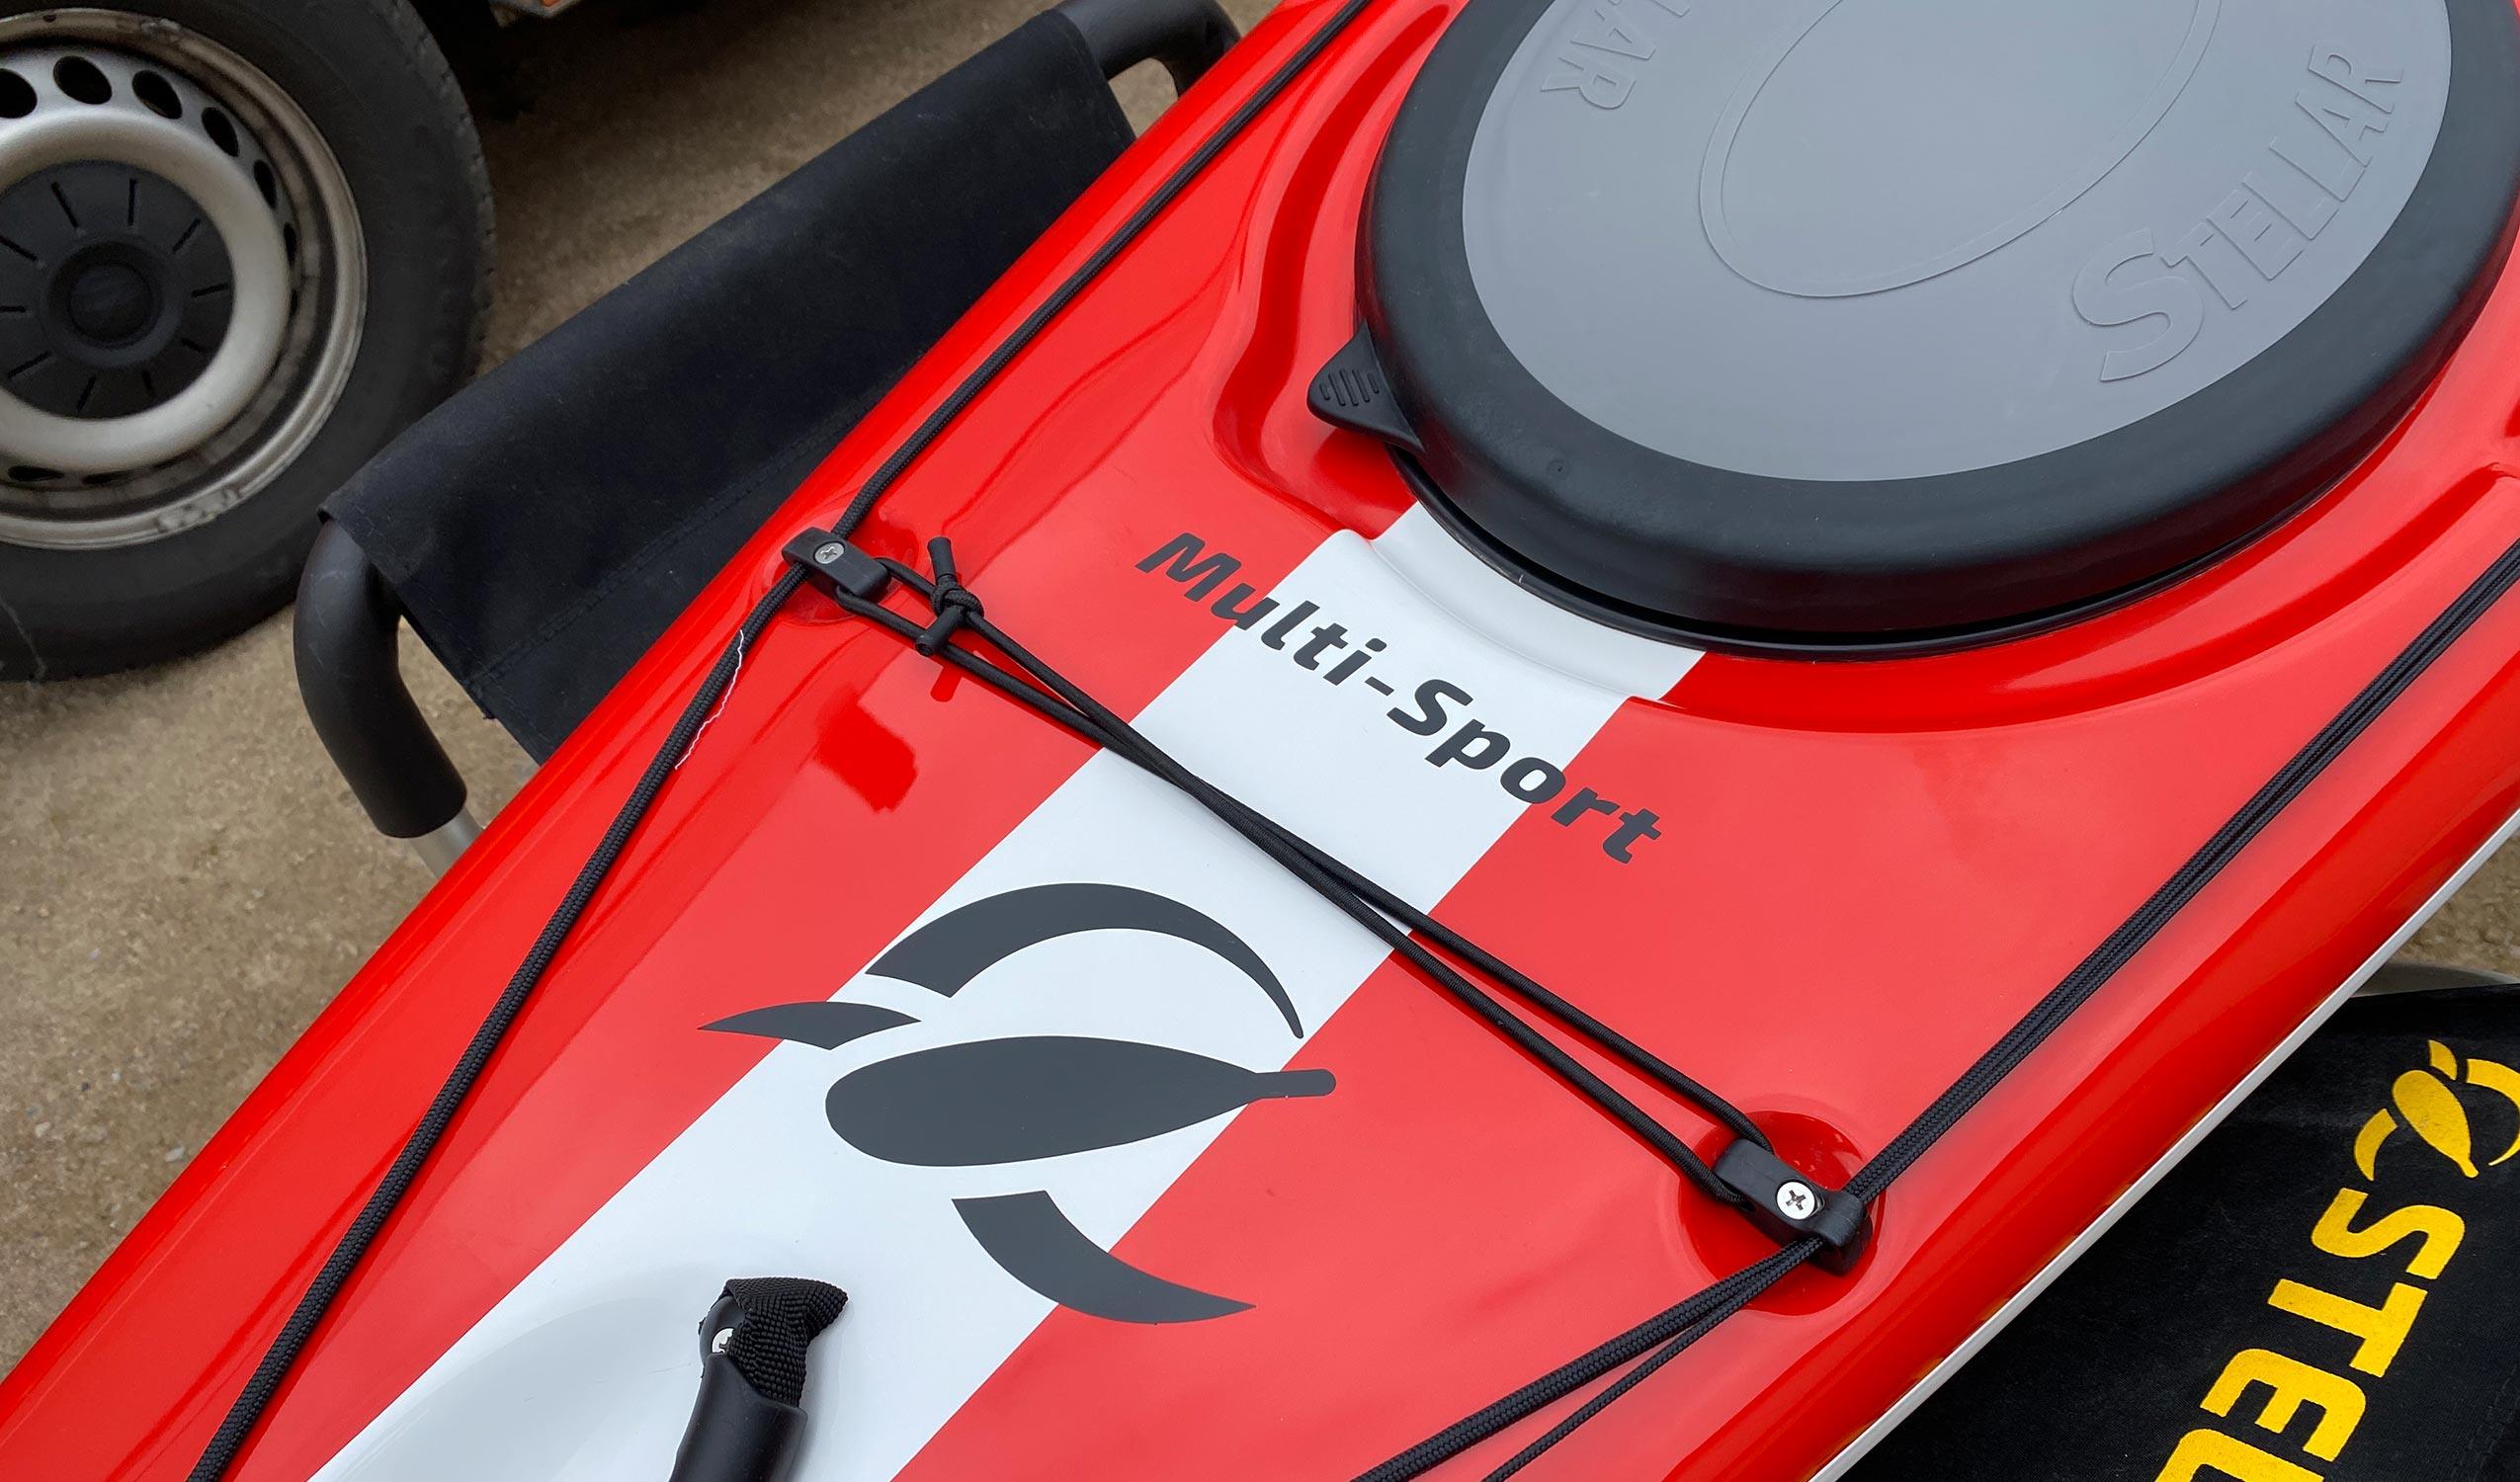 Produktbild von Kajak " S14 G2 Multisport-rot weiß " der Marke STELLAR Lightweight für 3360.00 €. Erhältlich online bei Lite Venture ( www.liteventure.de )